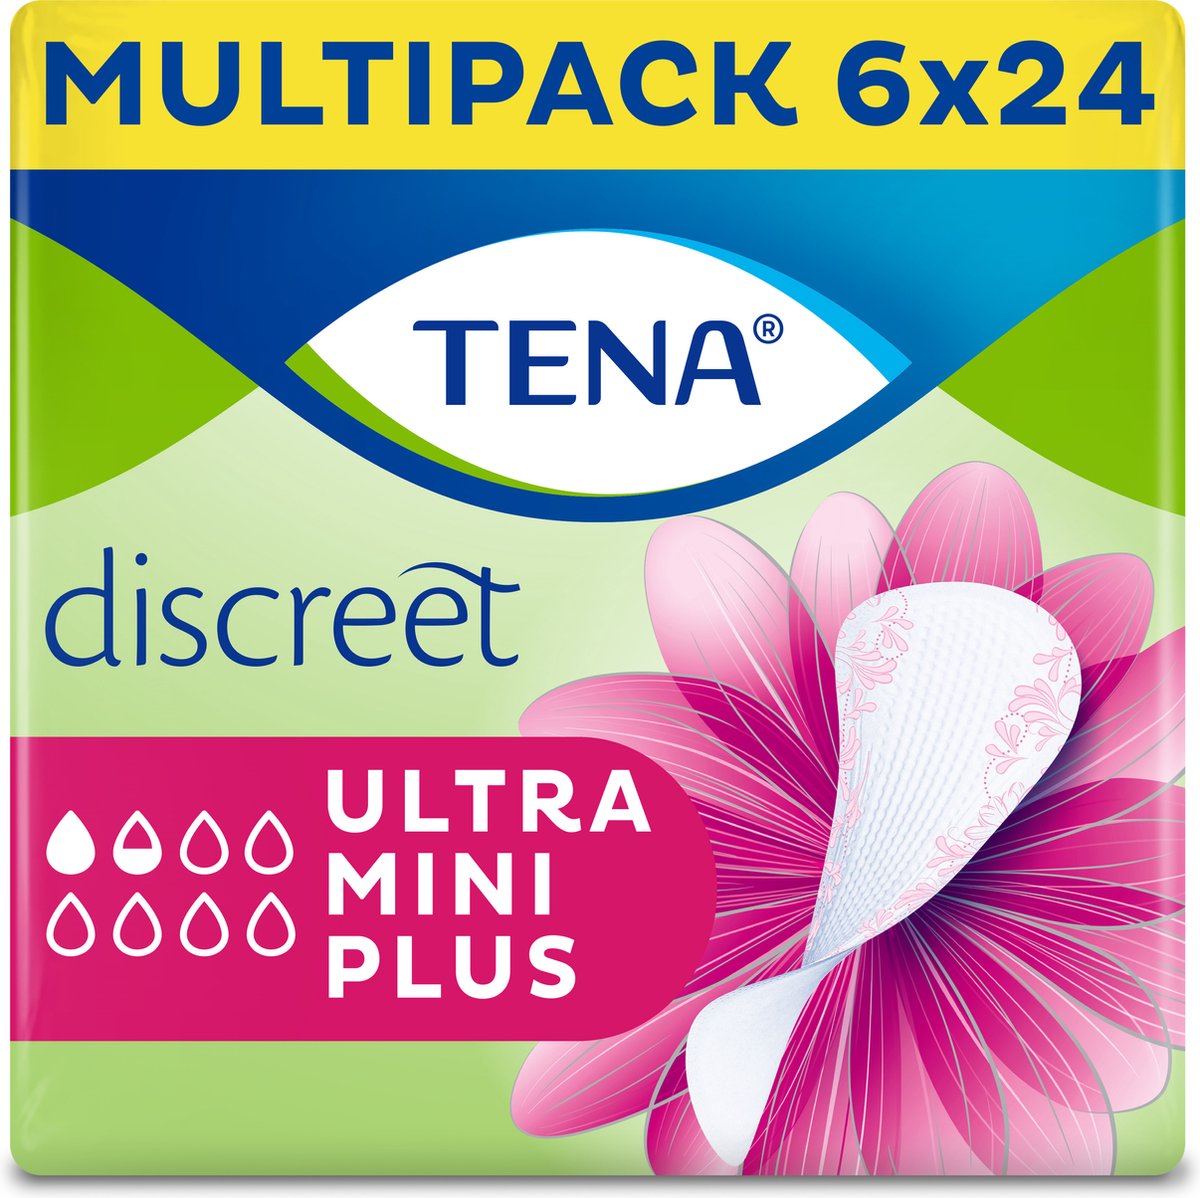 TENA Discreet Ultra Mini Plus inlegkruisjes - 6 x 24 stuks - voor urineverlies (incontinentie) - TENA